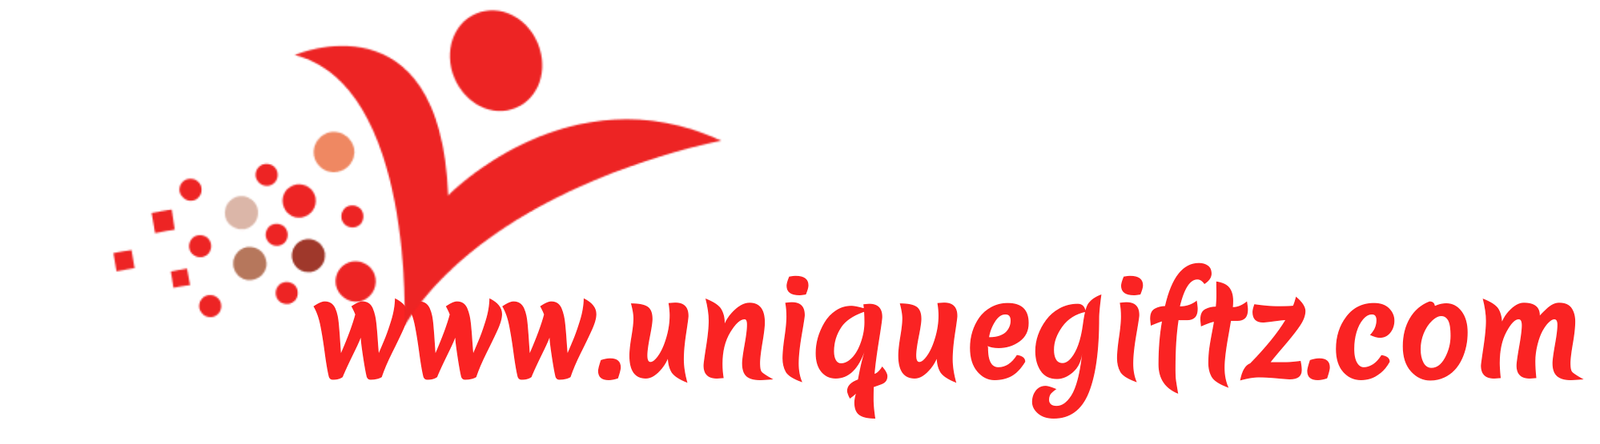 uniquegiftz logo